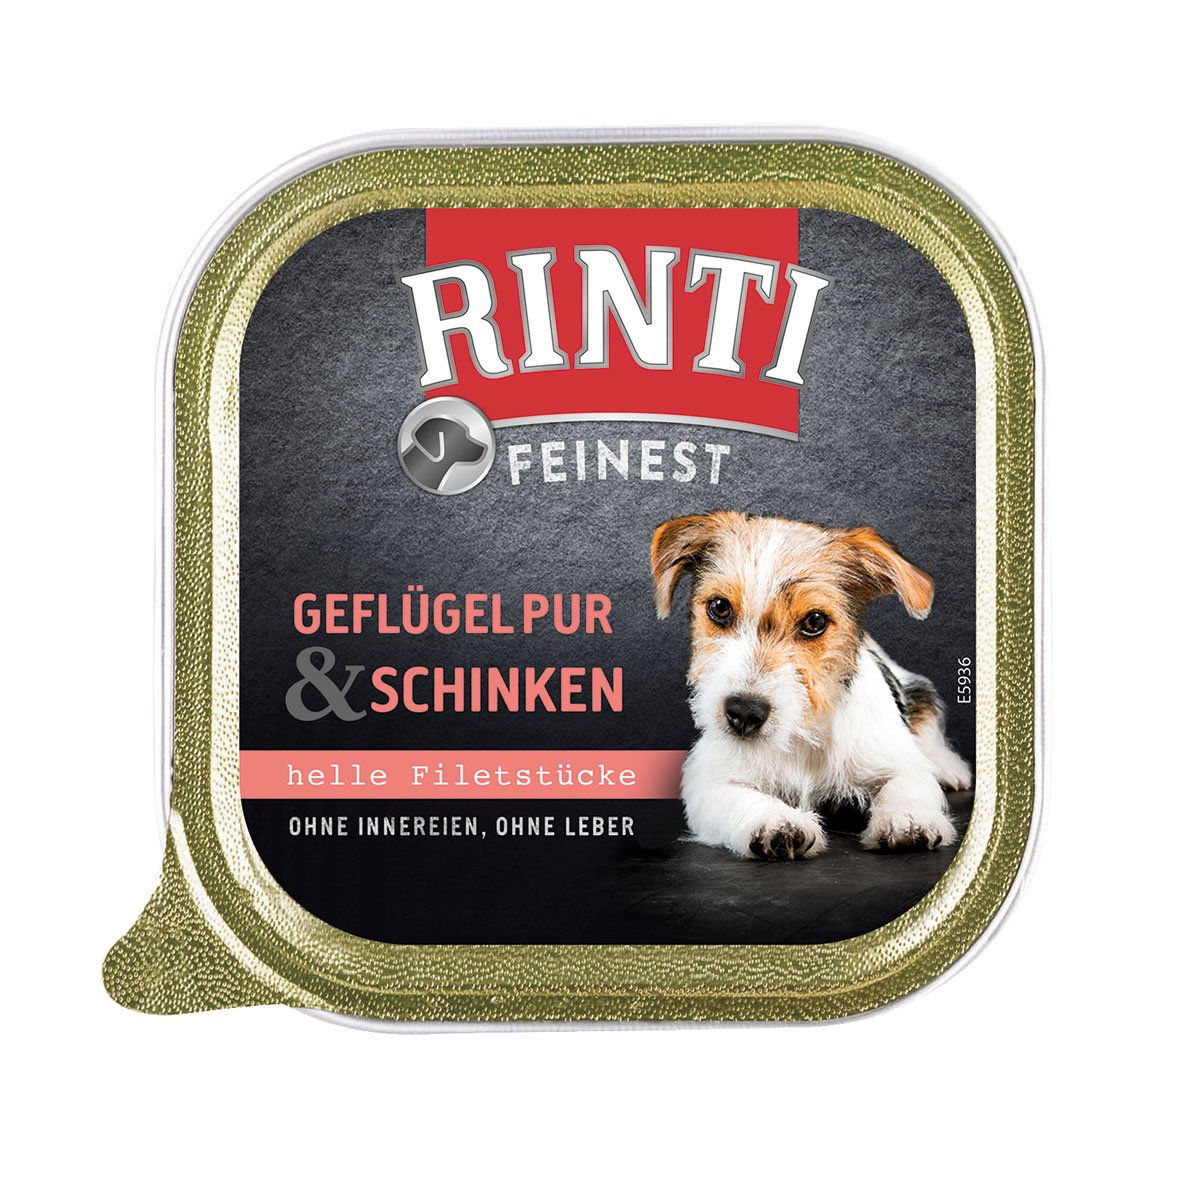 Rinti Feinest Geflügel pur & Schinken 44x150g